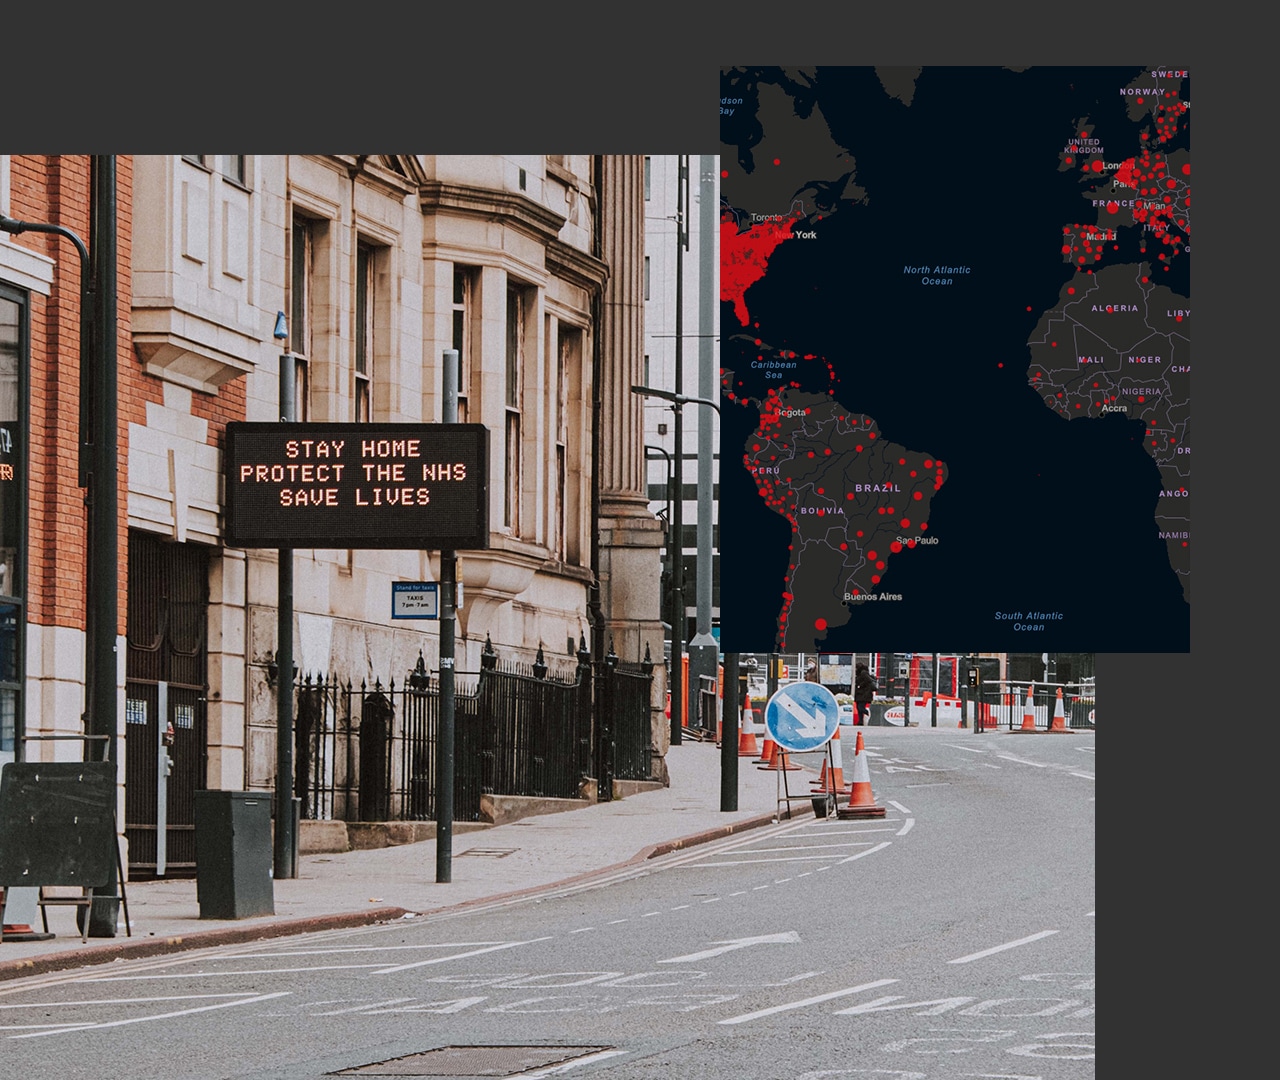 Ein Schild mit dem Text "Zu Hause bleiben heißt Leben retten" an einer innerstädtischen Straße, daneben eine digitale Karte, auf der die Vereinigten Staaten, Südamerika und Afrika zu sehen sind